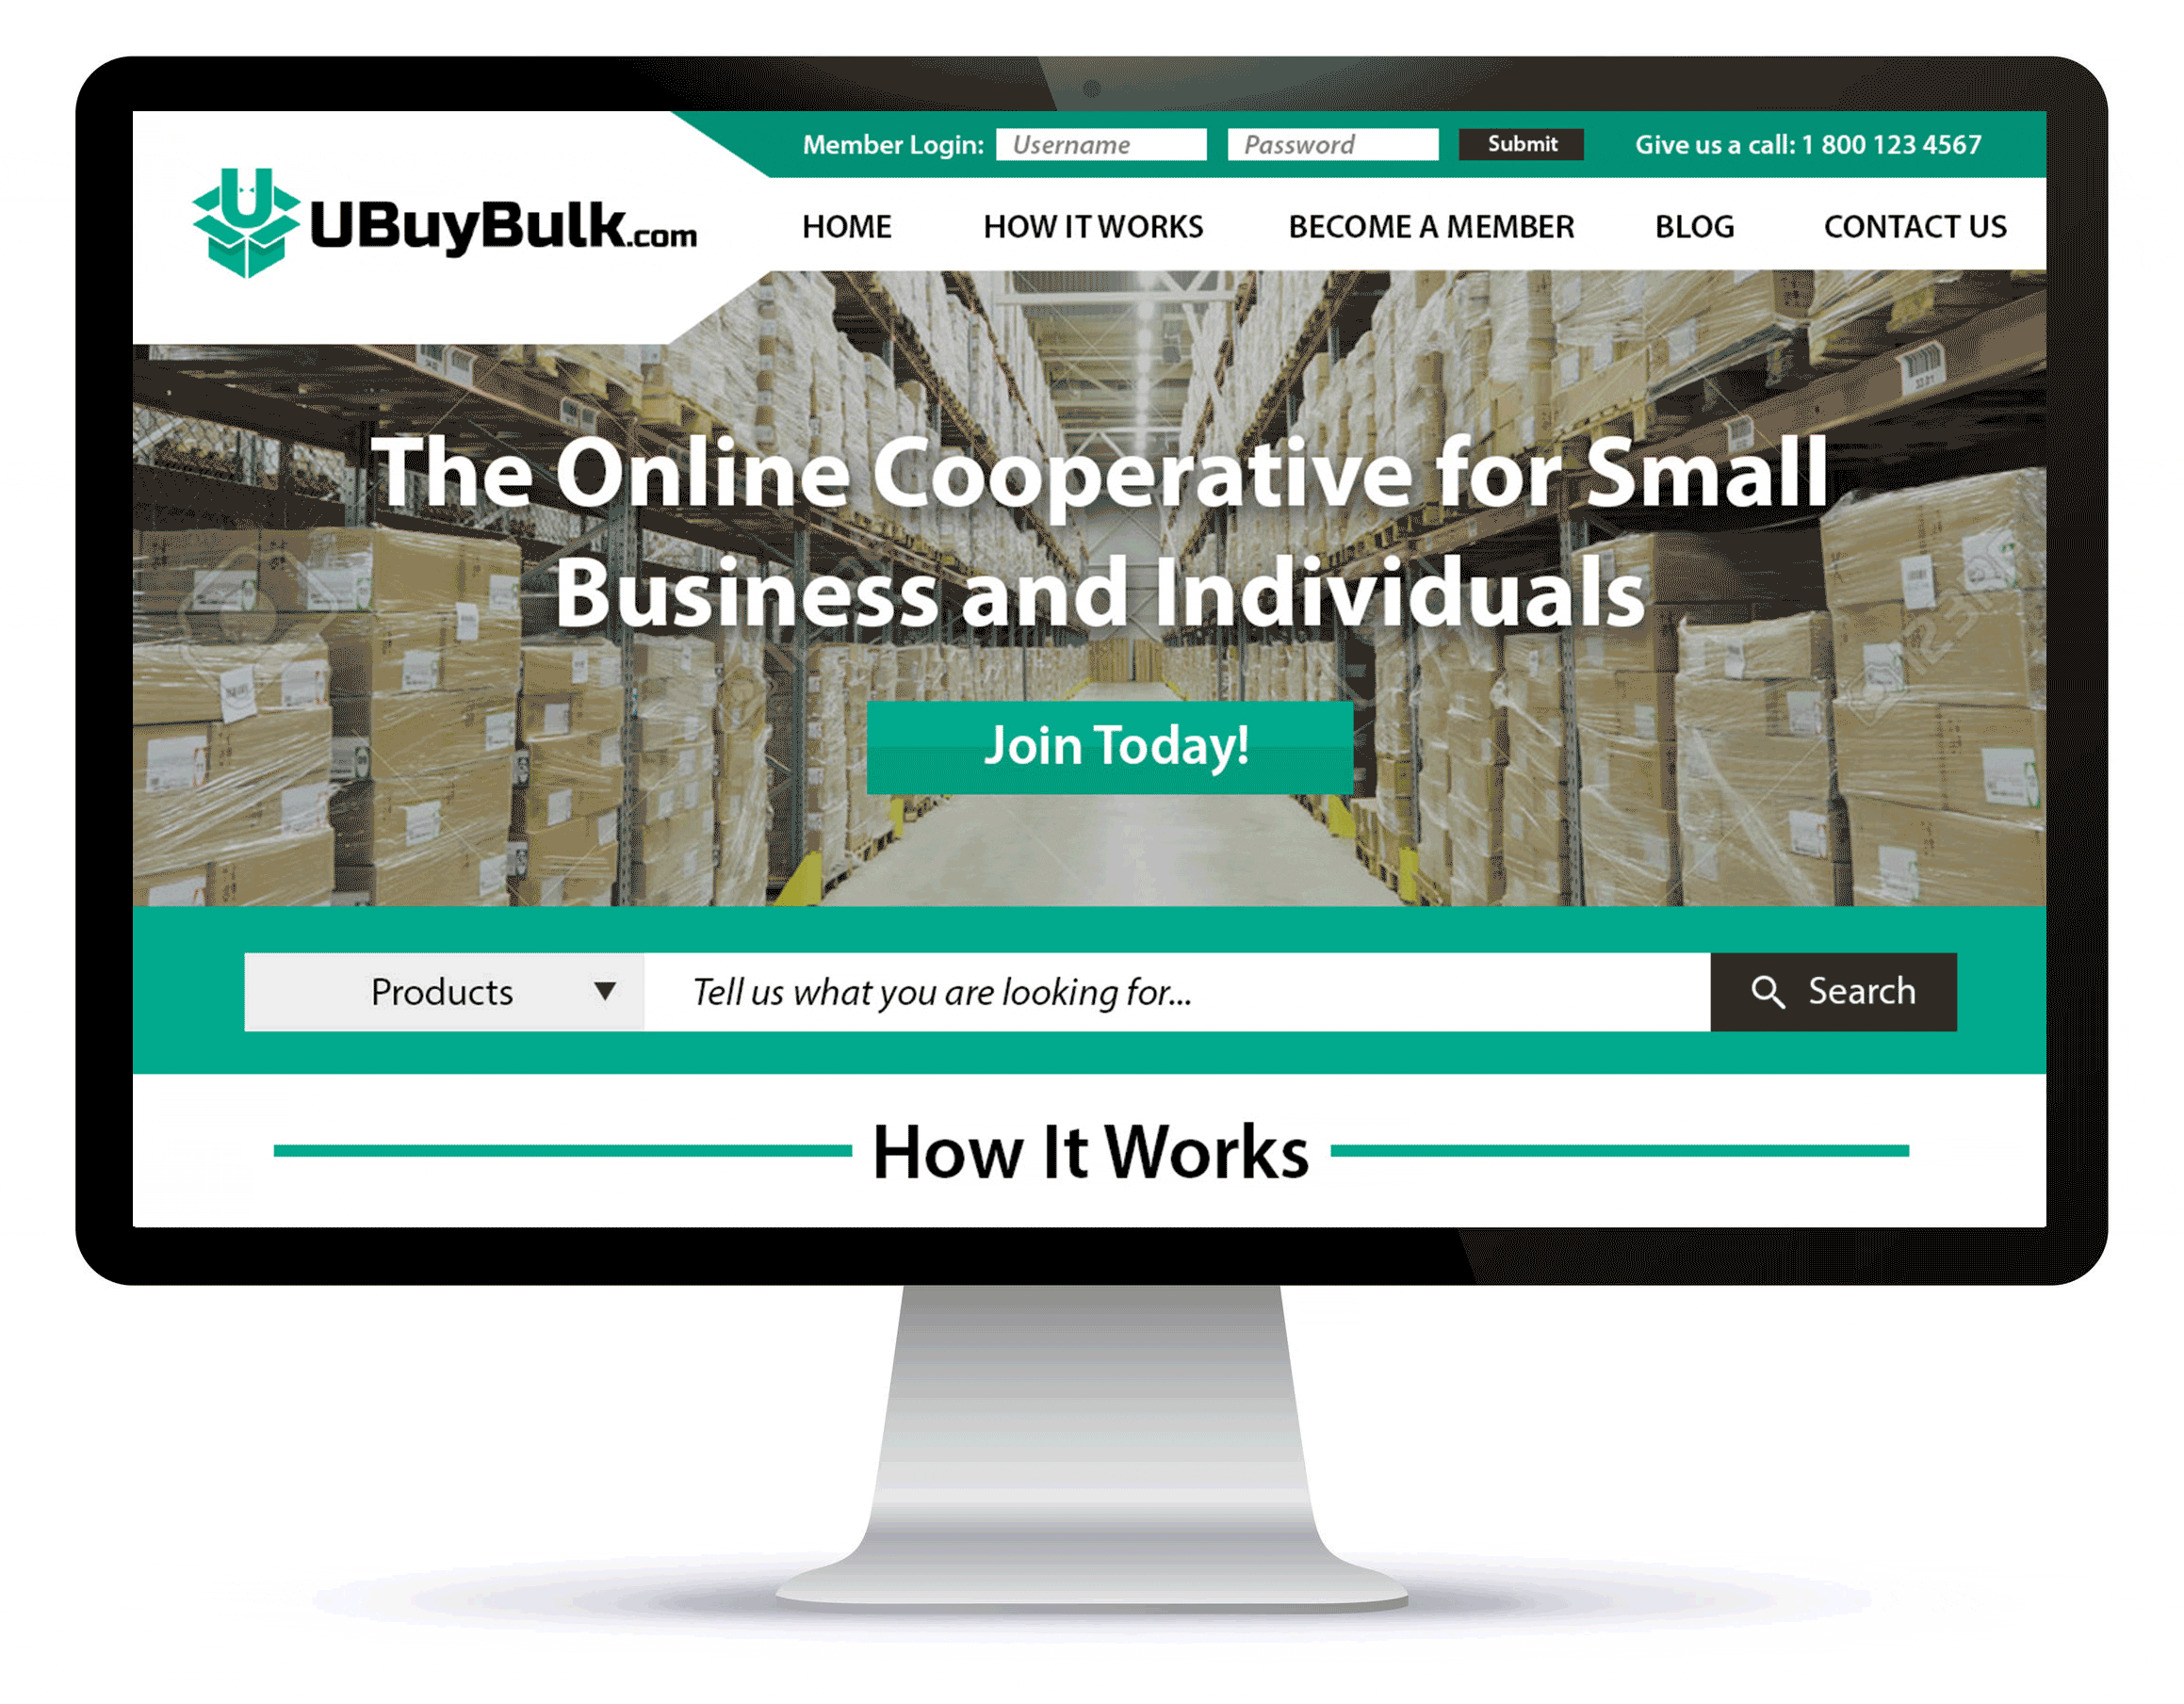 ubuybulk - website and print media